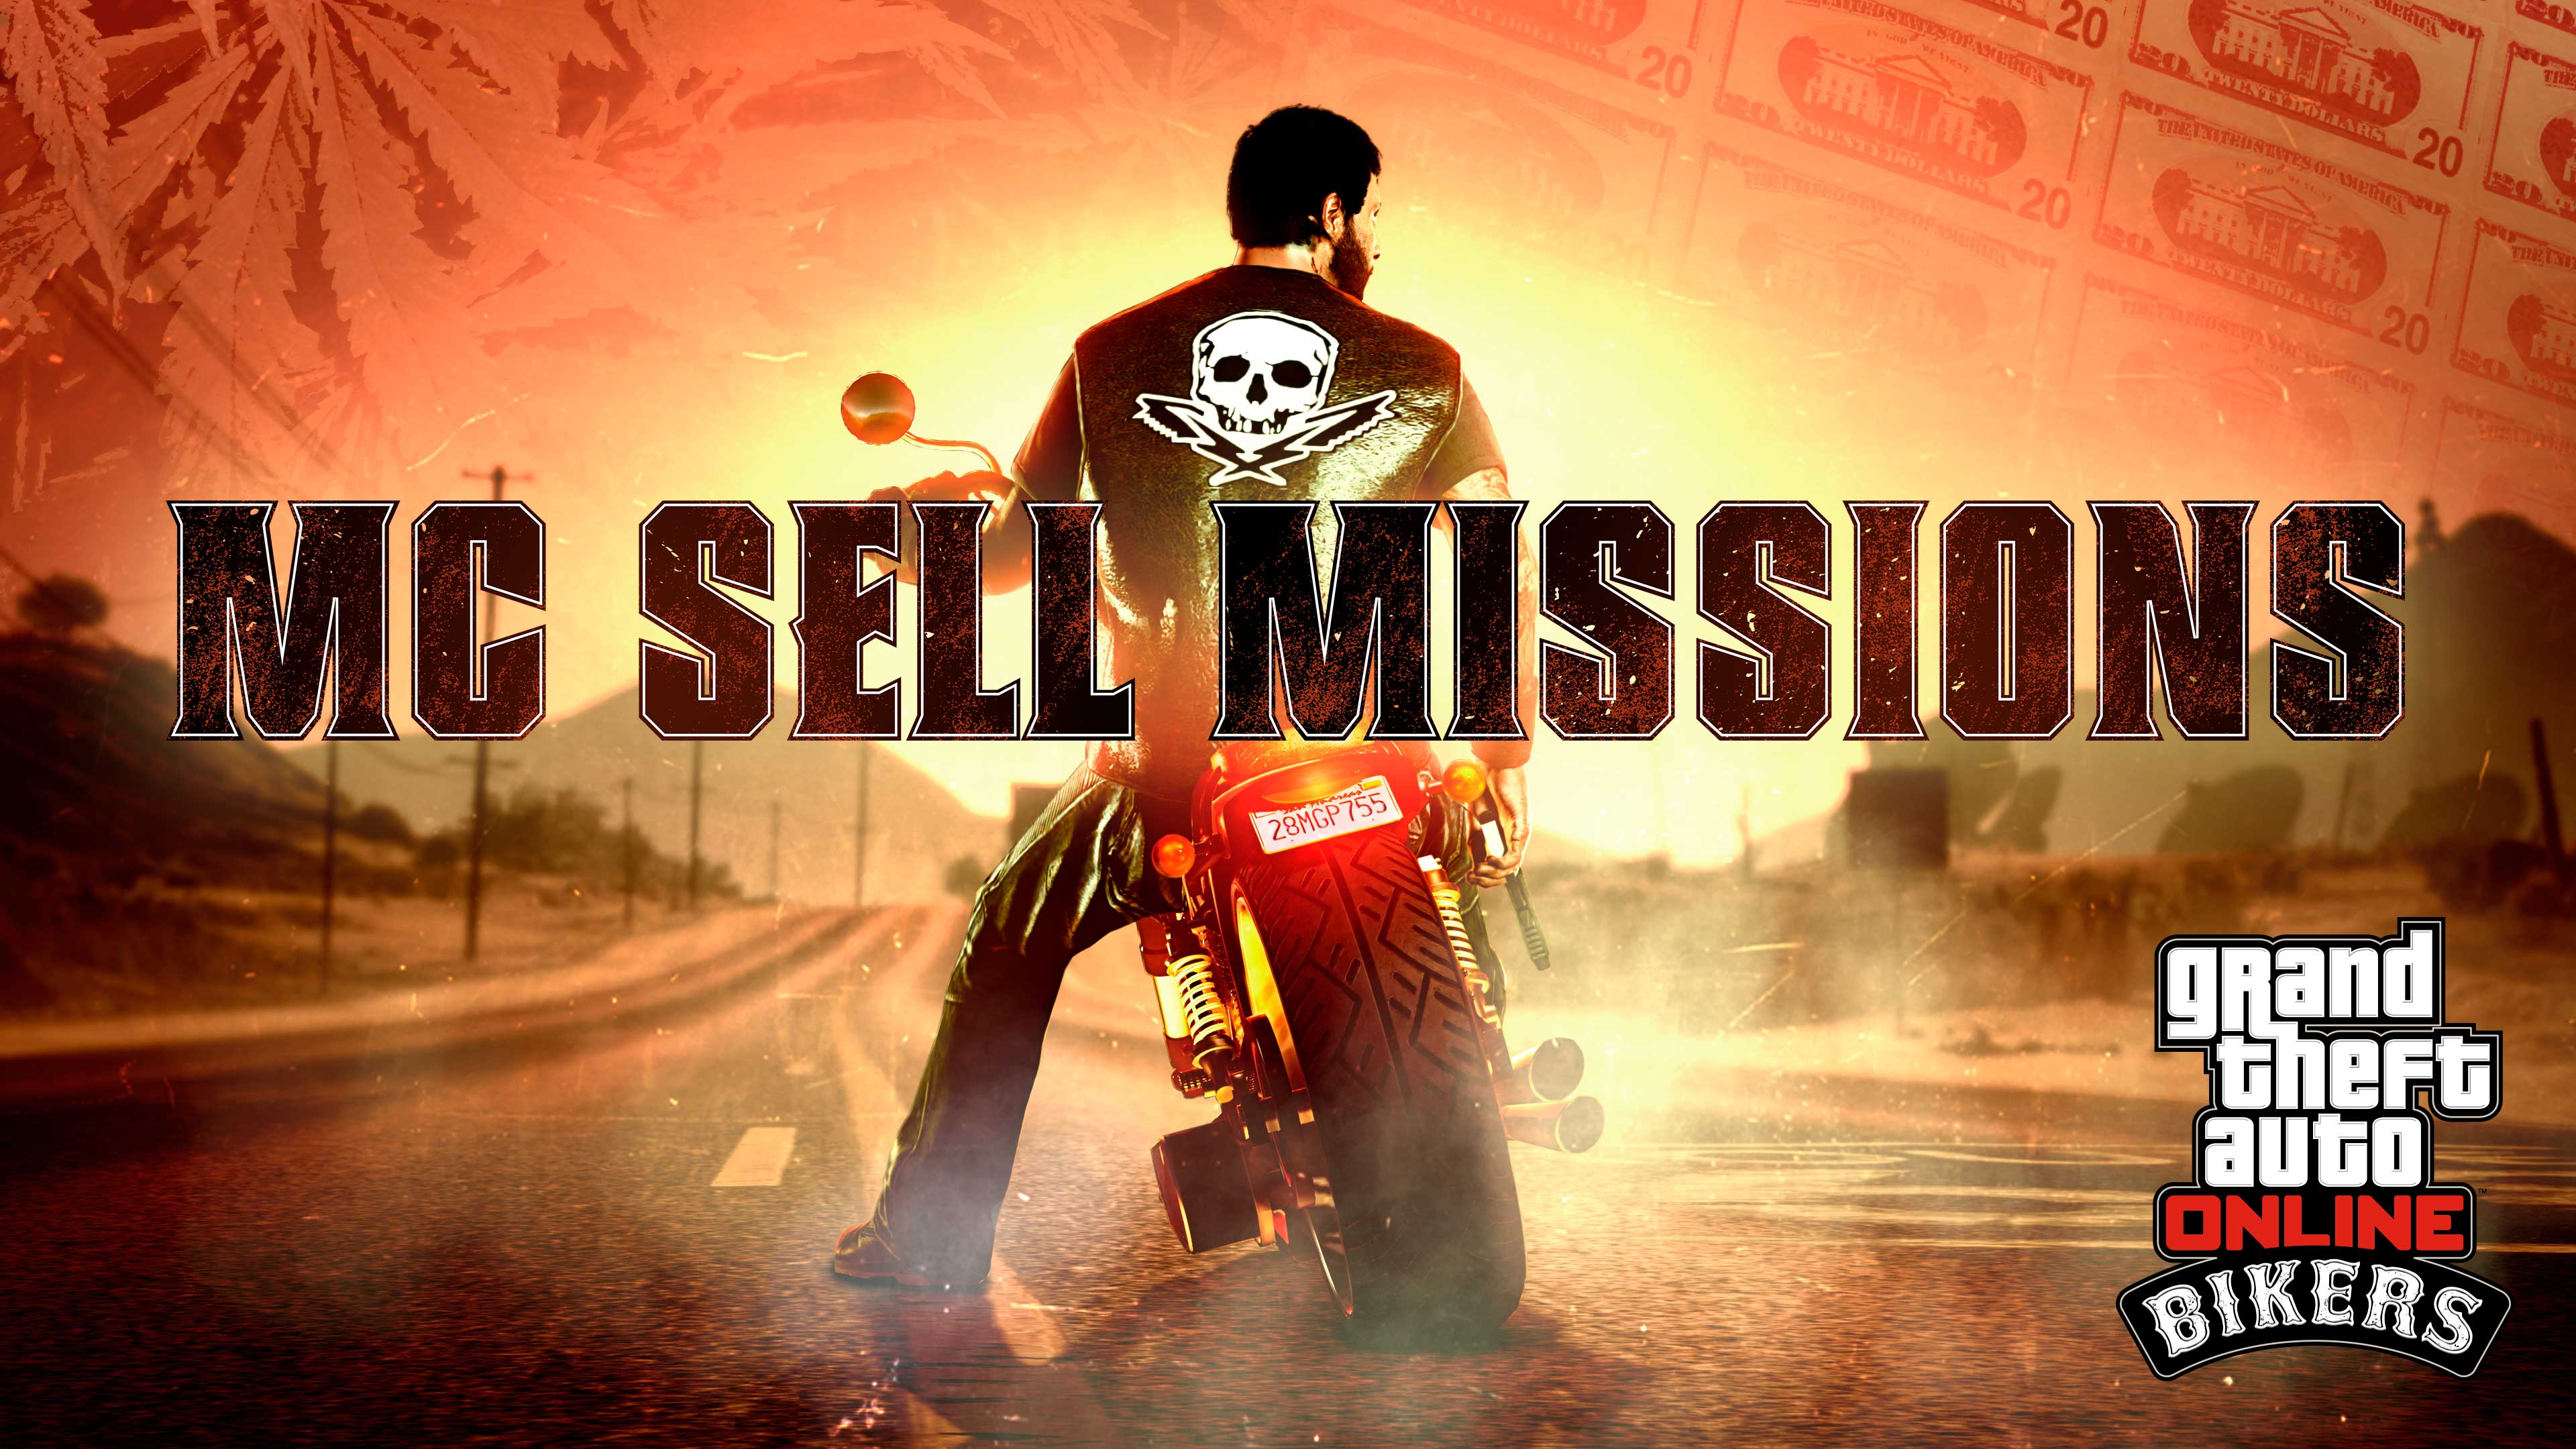 GTA 在线模式带有摩托帮贩卖任务标志的骑手图片